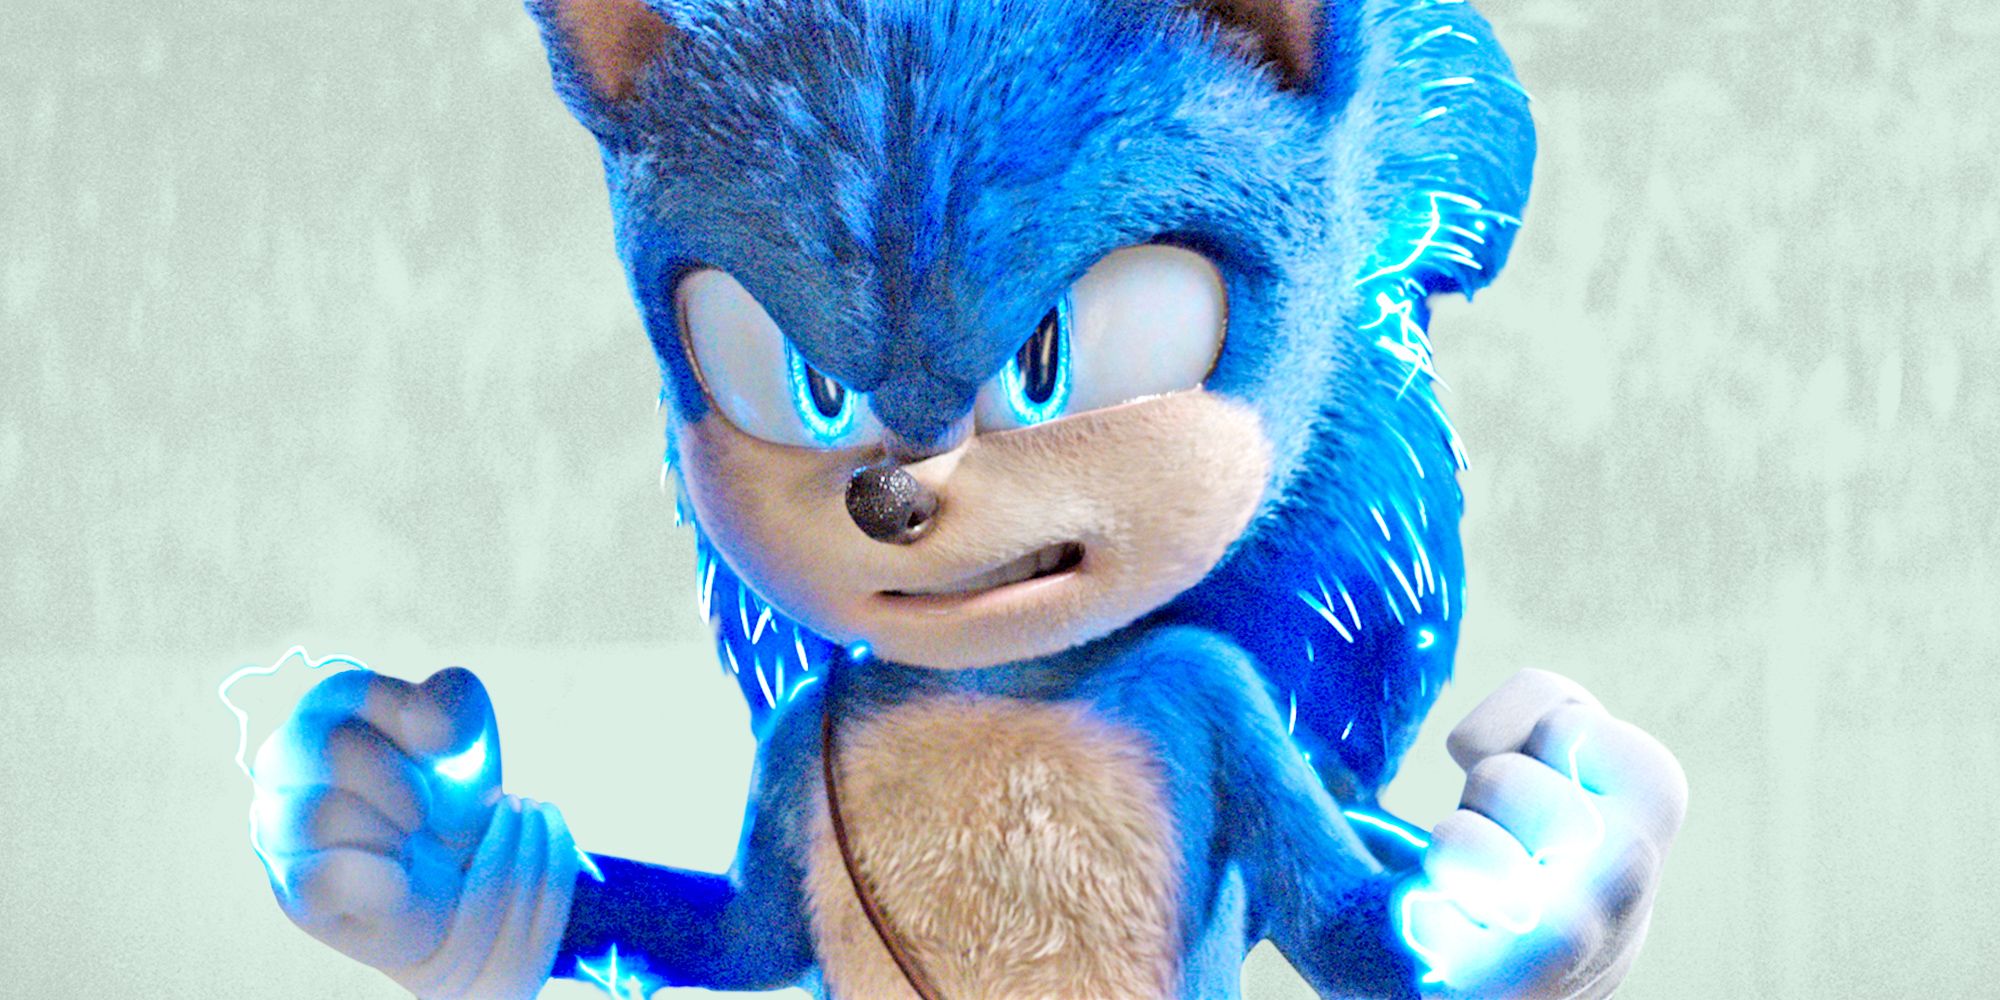 Top Ten Sonic The Hedgehog Characters!, Here are my top ten…